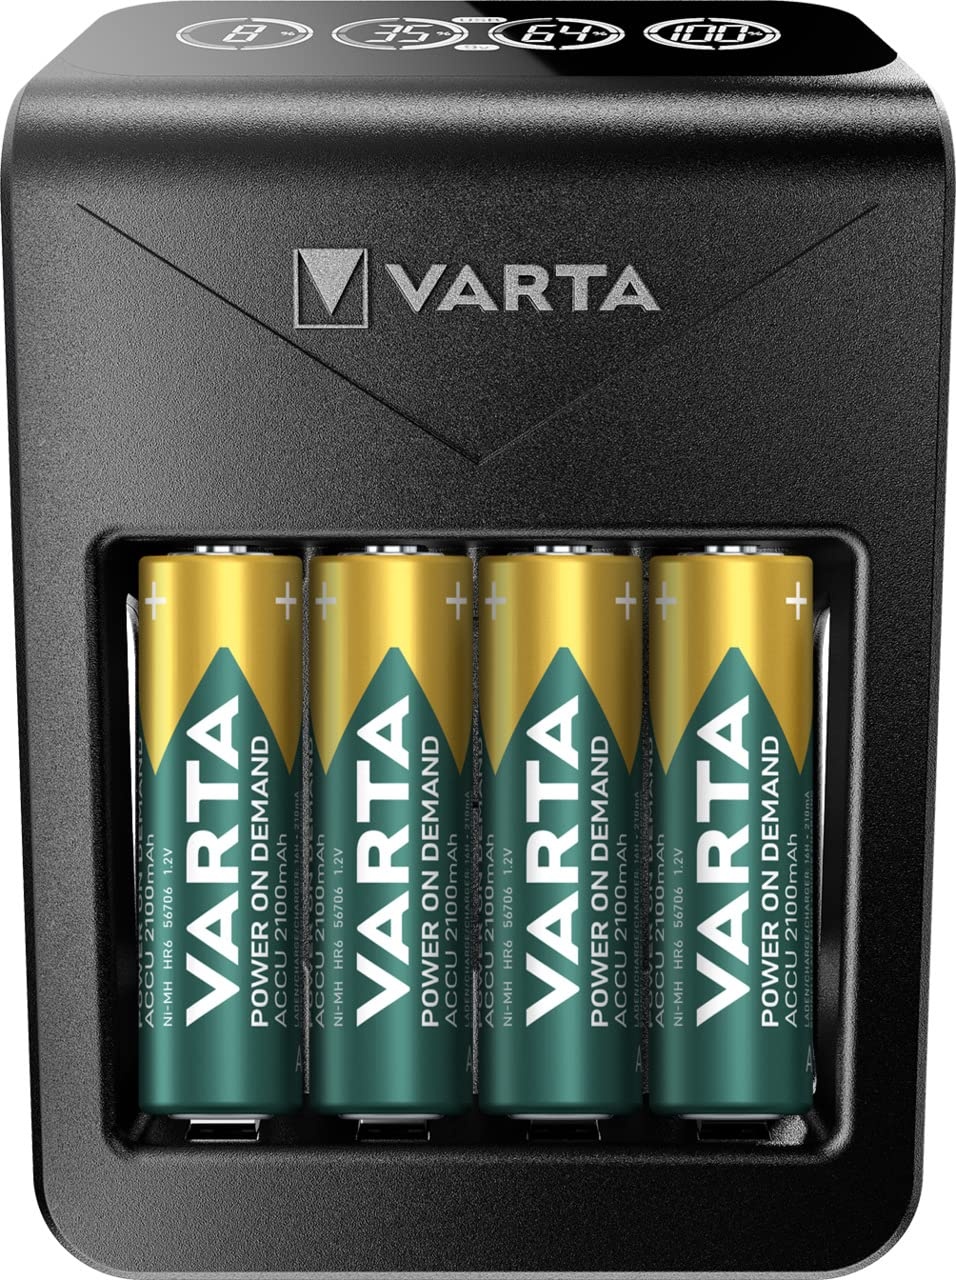 VARTA Akku Ladegerät inkl. 4X AA 2100mAh Akku, Batterieladegerät für AA/AAA/9V & USB Geräte, Power on Demand LCD Charger+, Einzelschachtladung [Exklusiv bei Amazon]